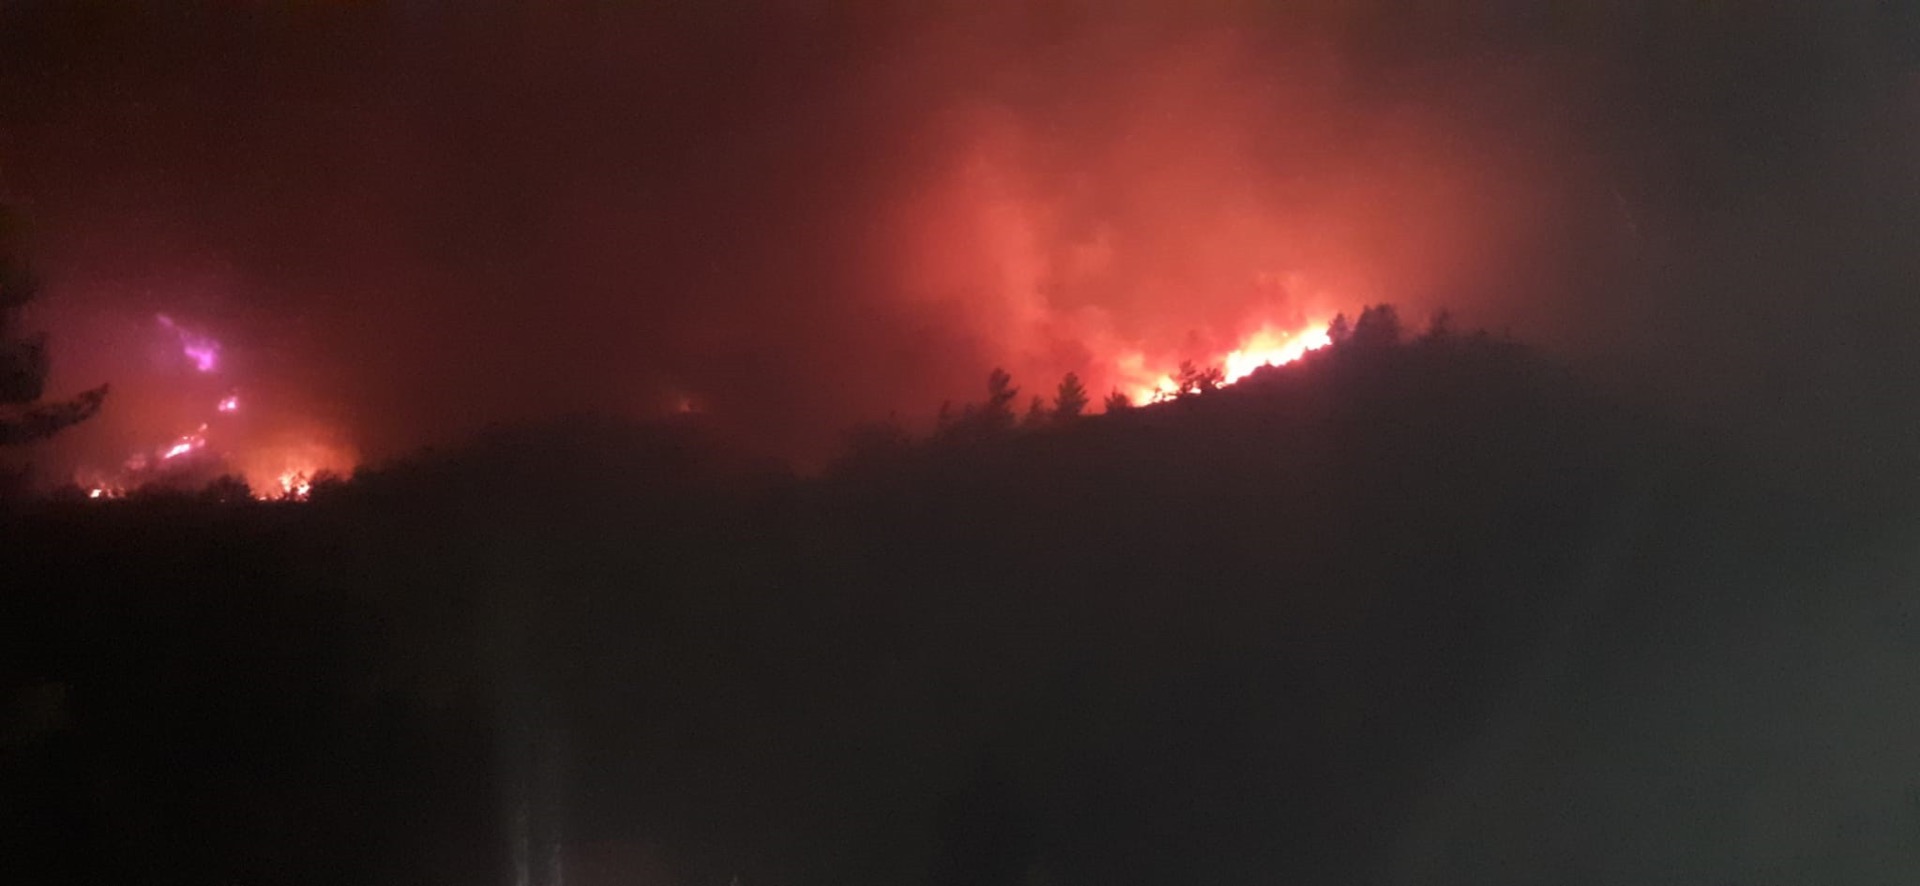  Marmaris’teki orman yangınında 10 saat geride kaldı